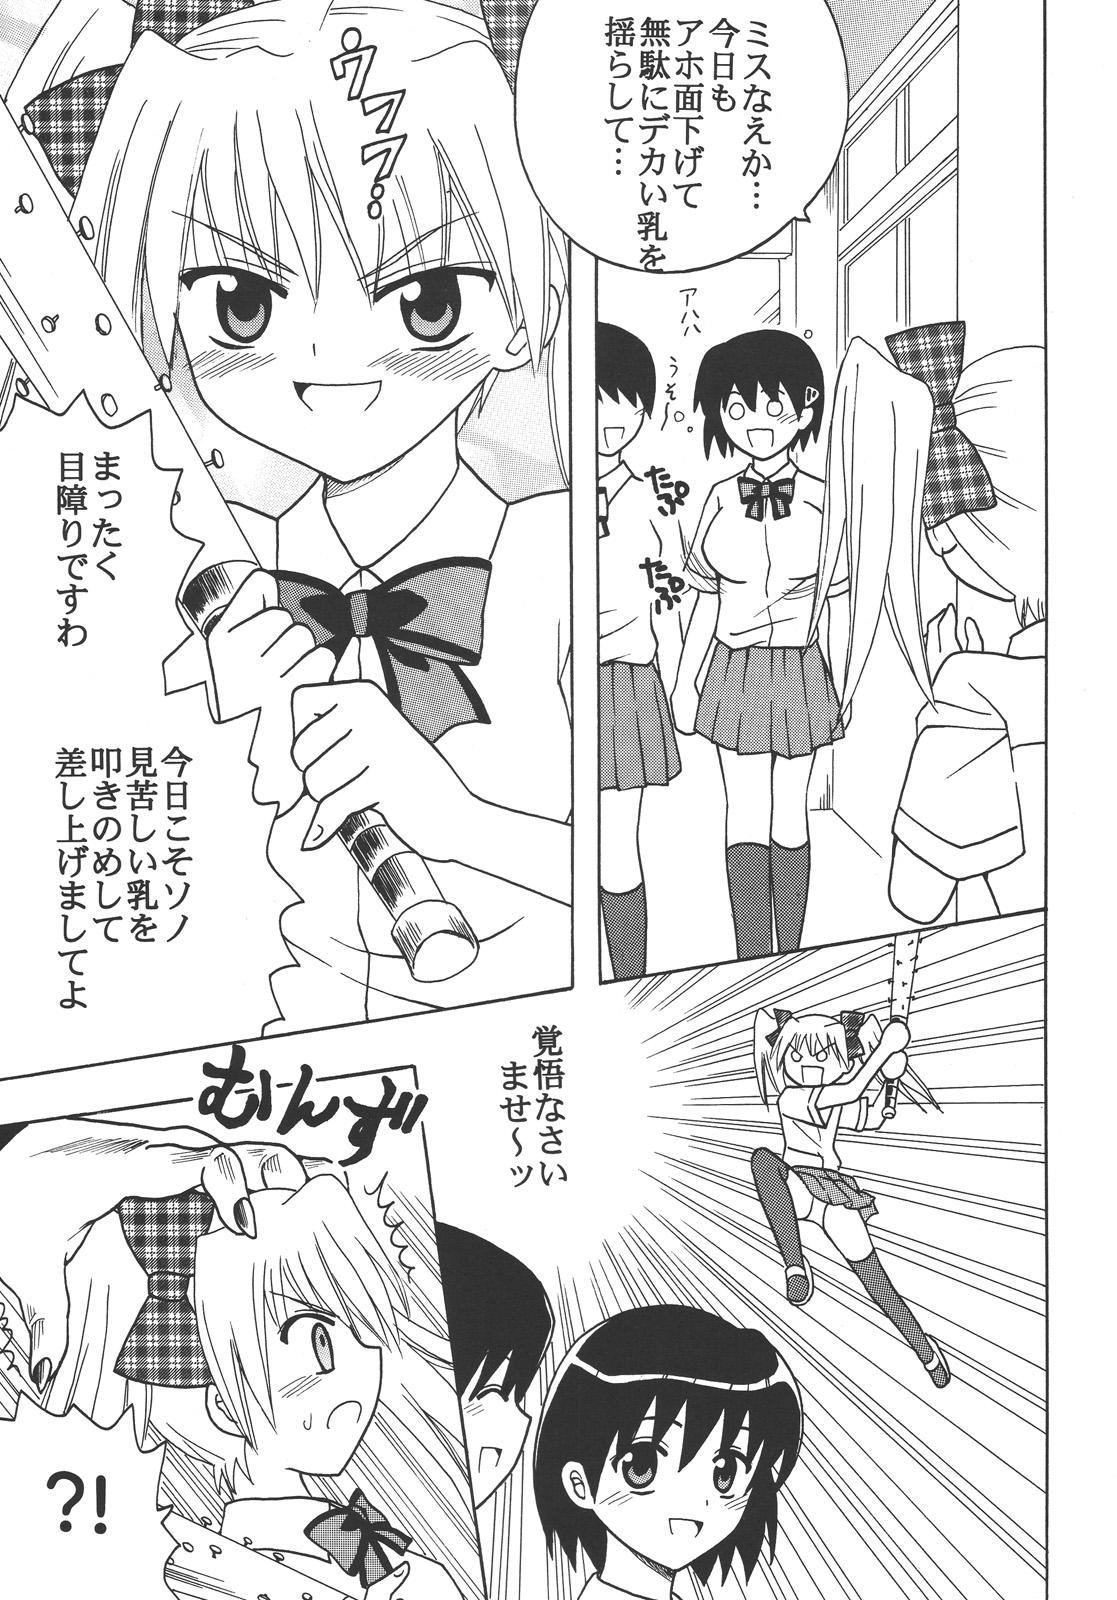 Short Nakadashi Maid no Hinkaku 3 - Kamen no maid guy Bikini - Page 4